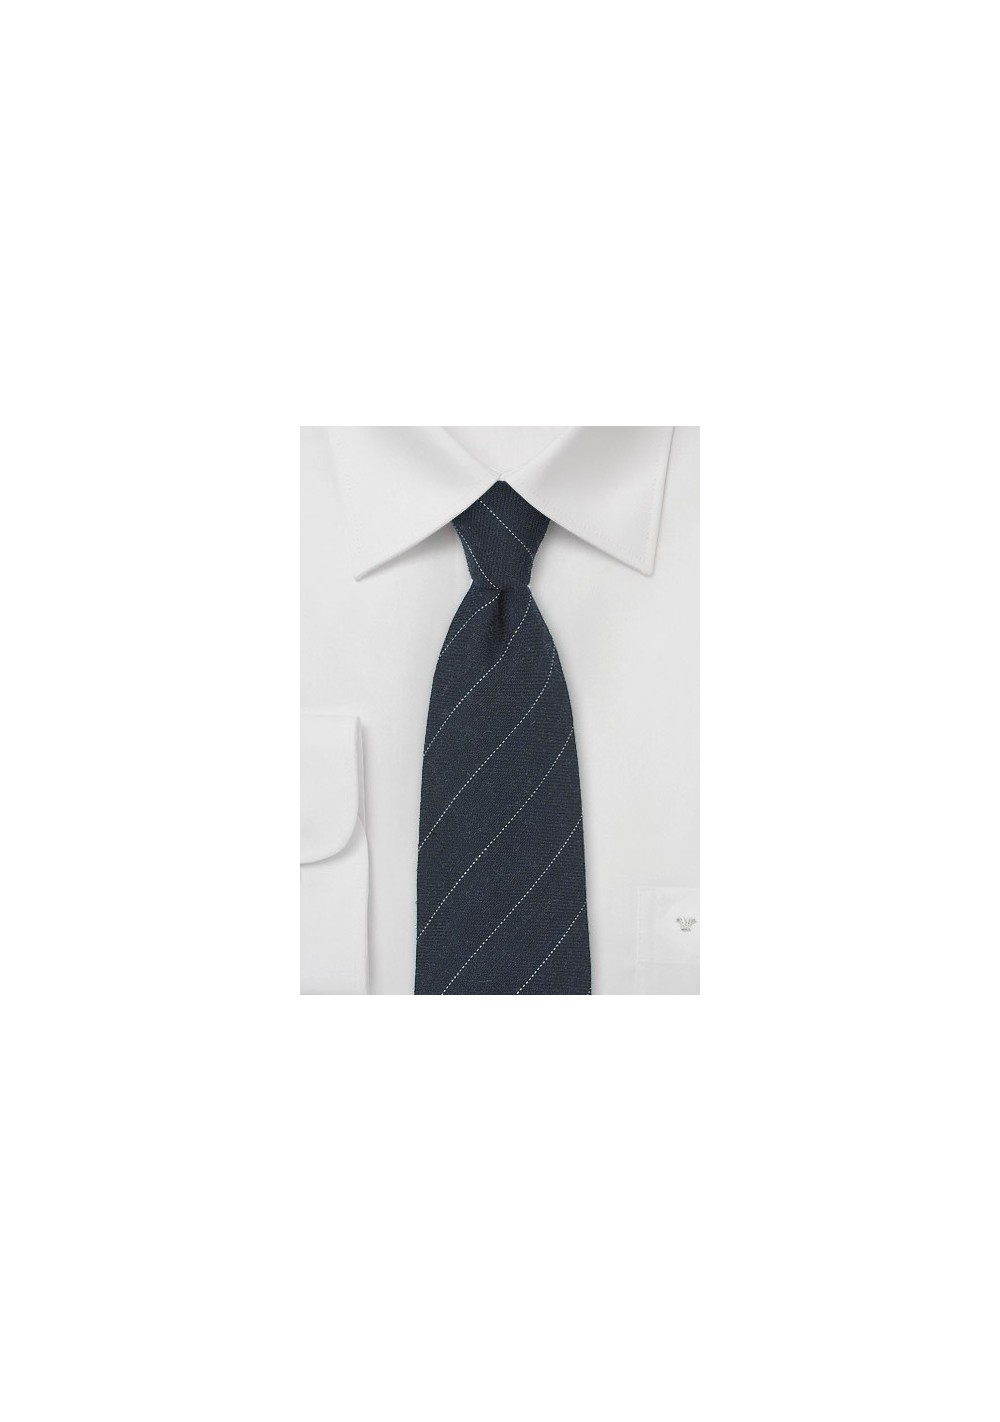 Midnight Blue Wool Tie with Fine Stripe Design